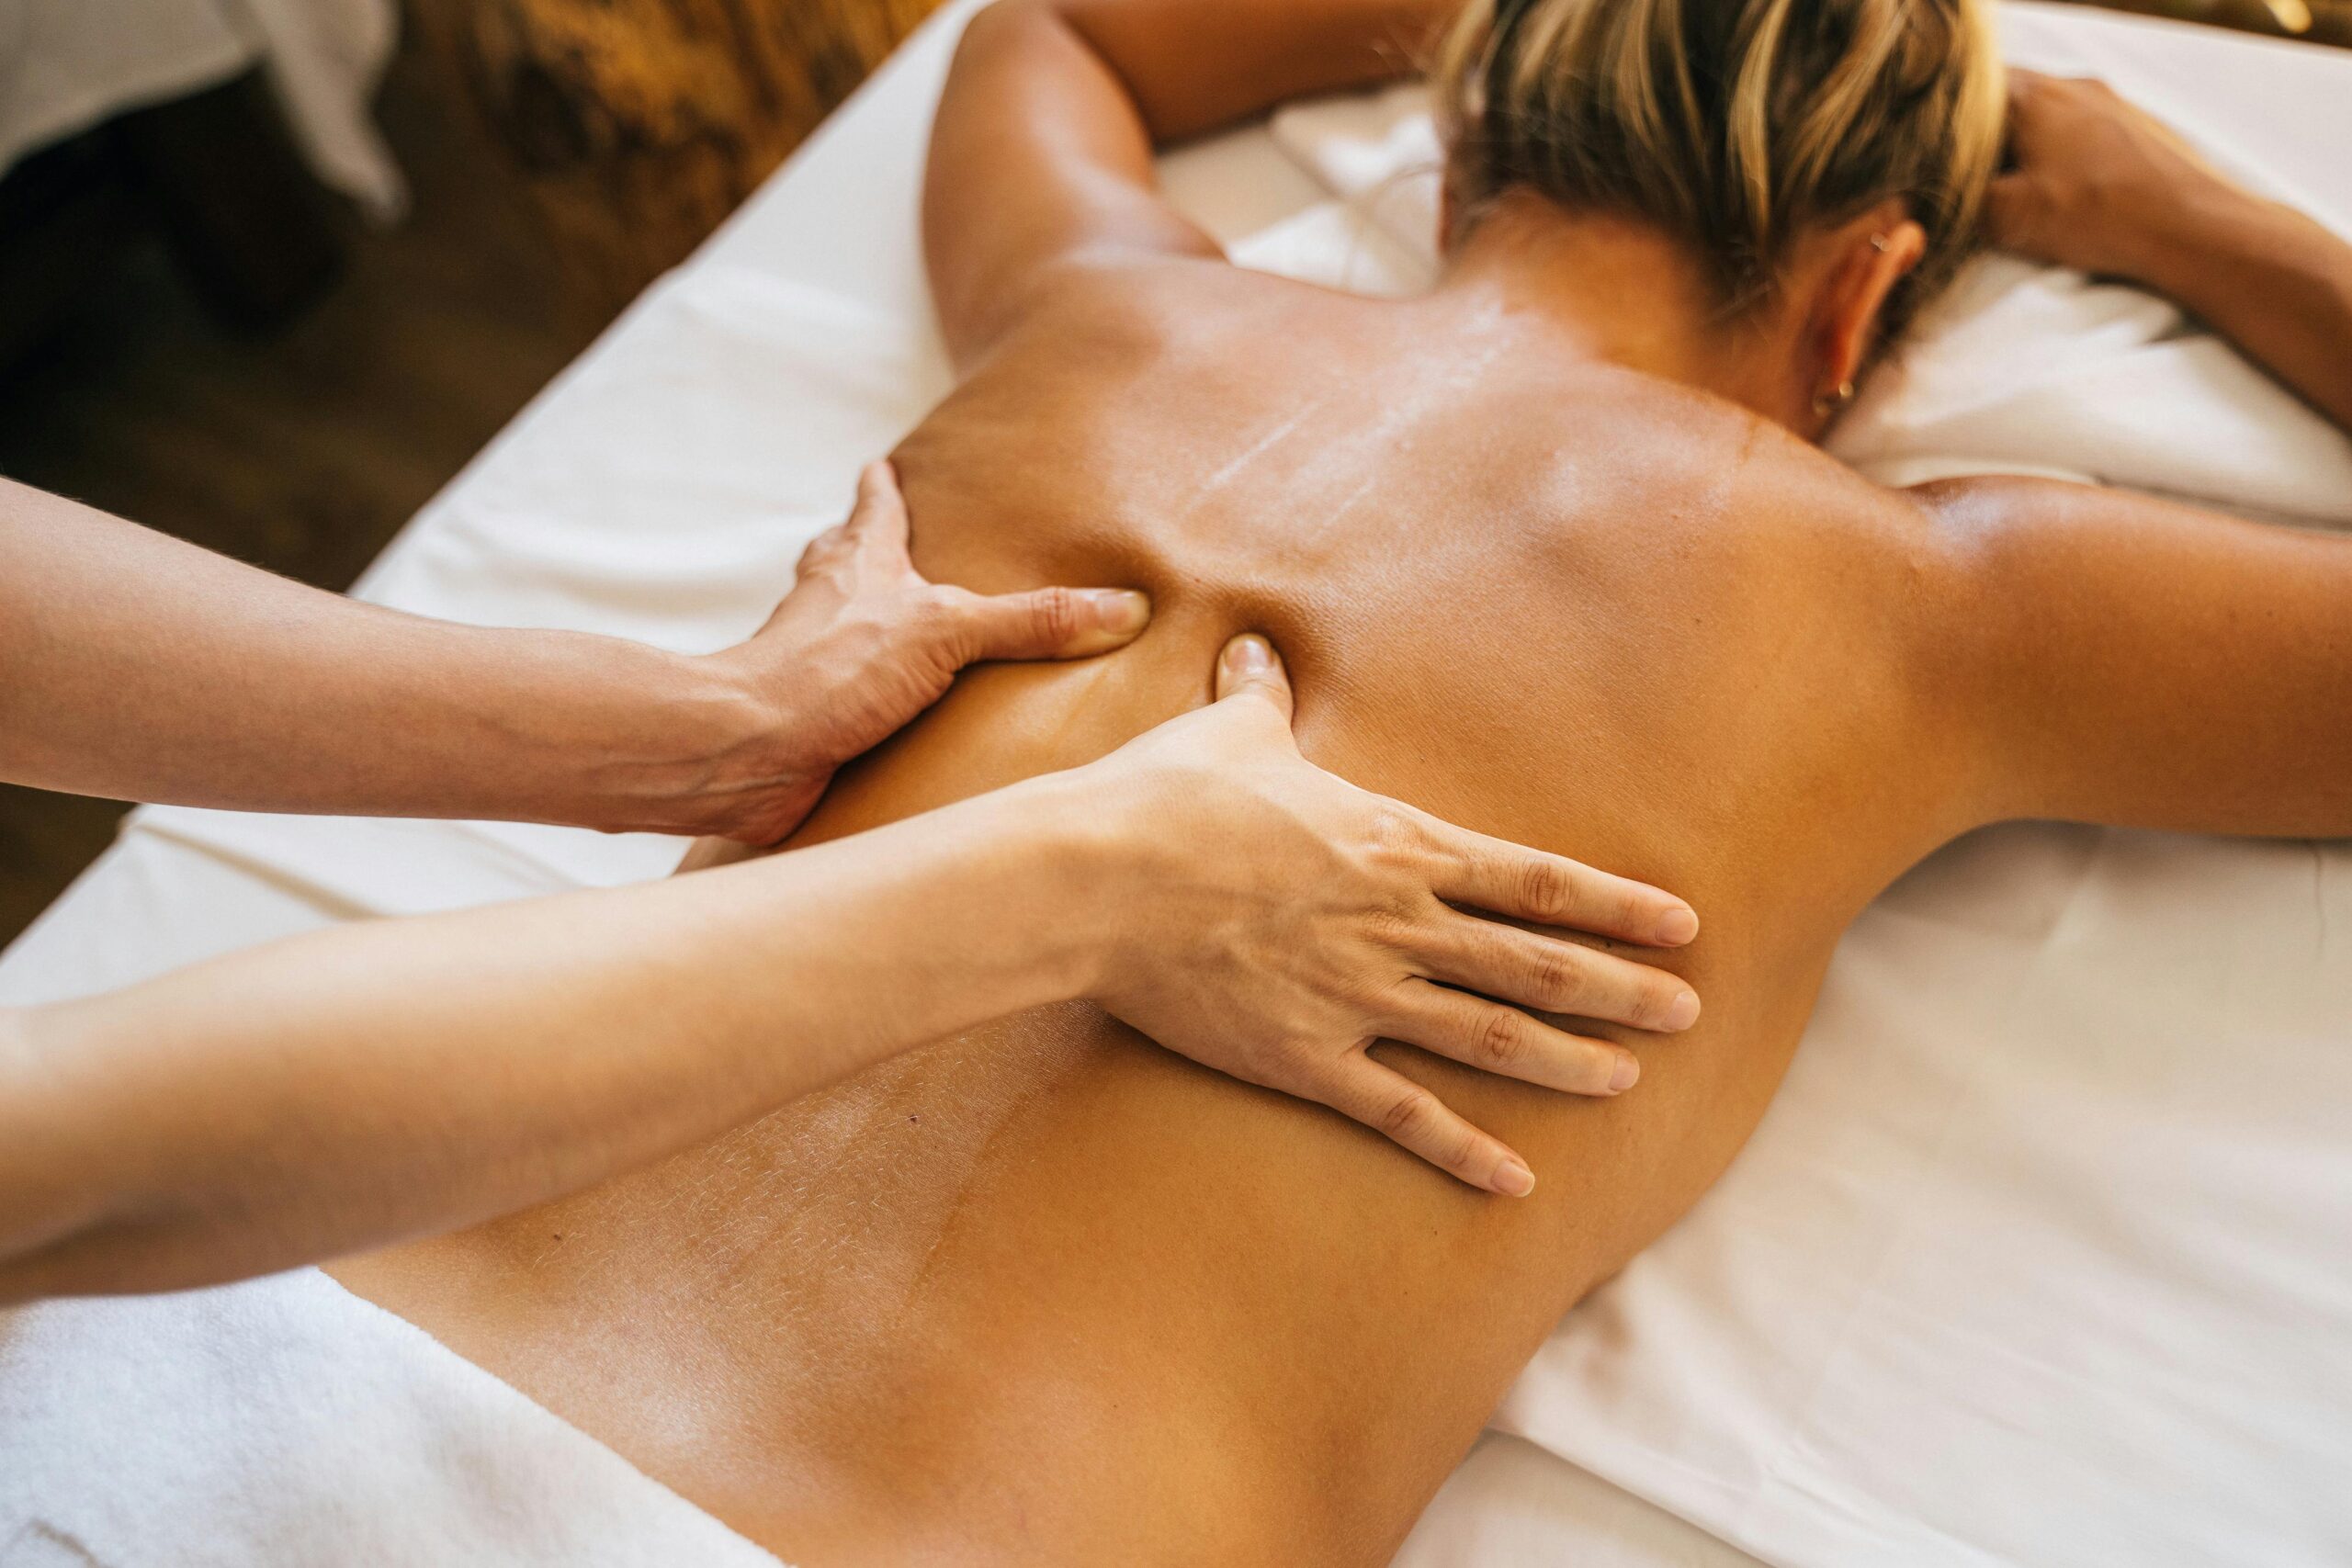 Massage thérapeutique du dos pratiqué par un professionnel sur une cliente dans un environnement relaxant